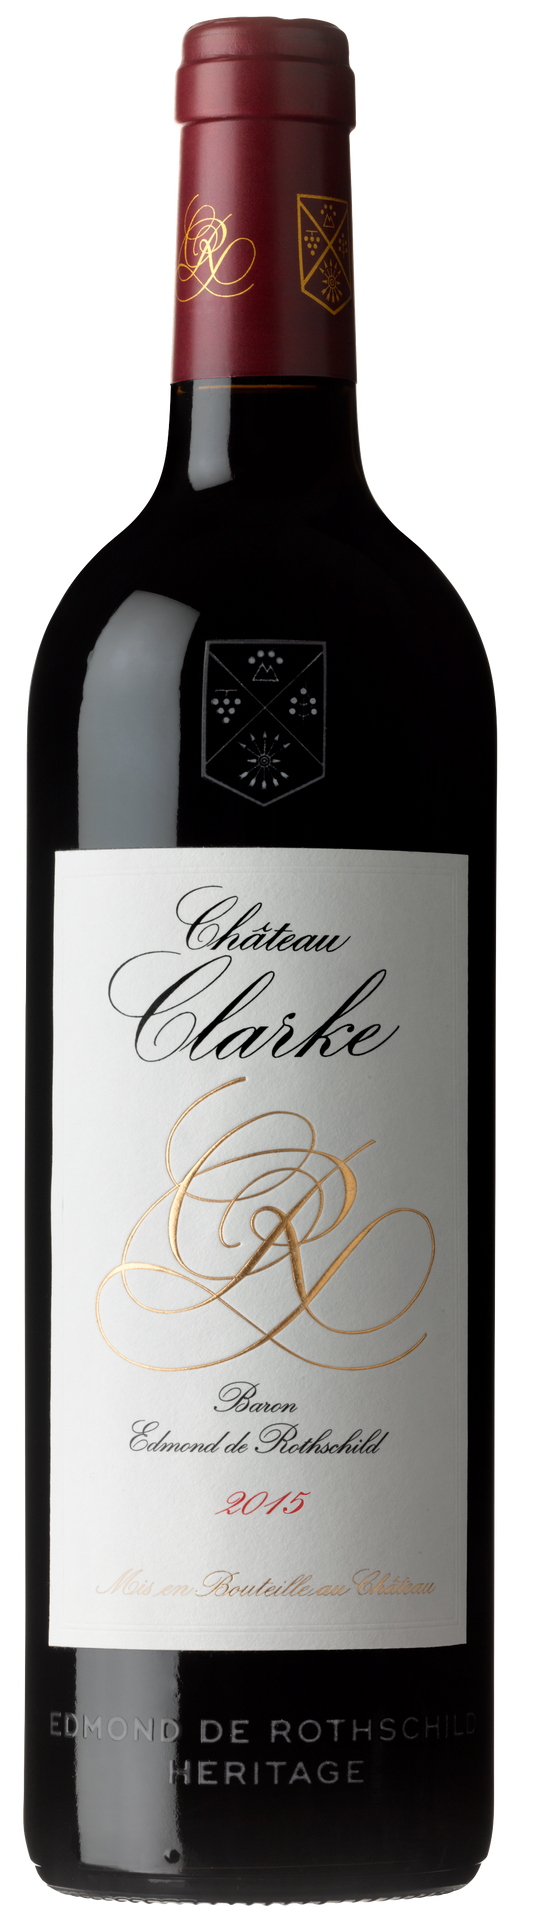 Château Clarke 2016